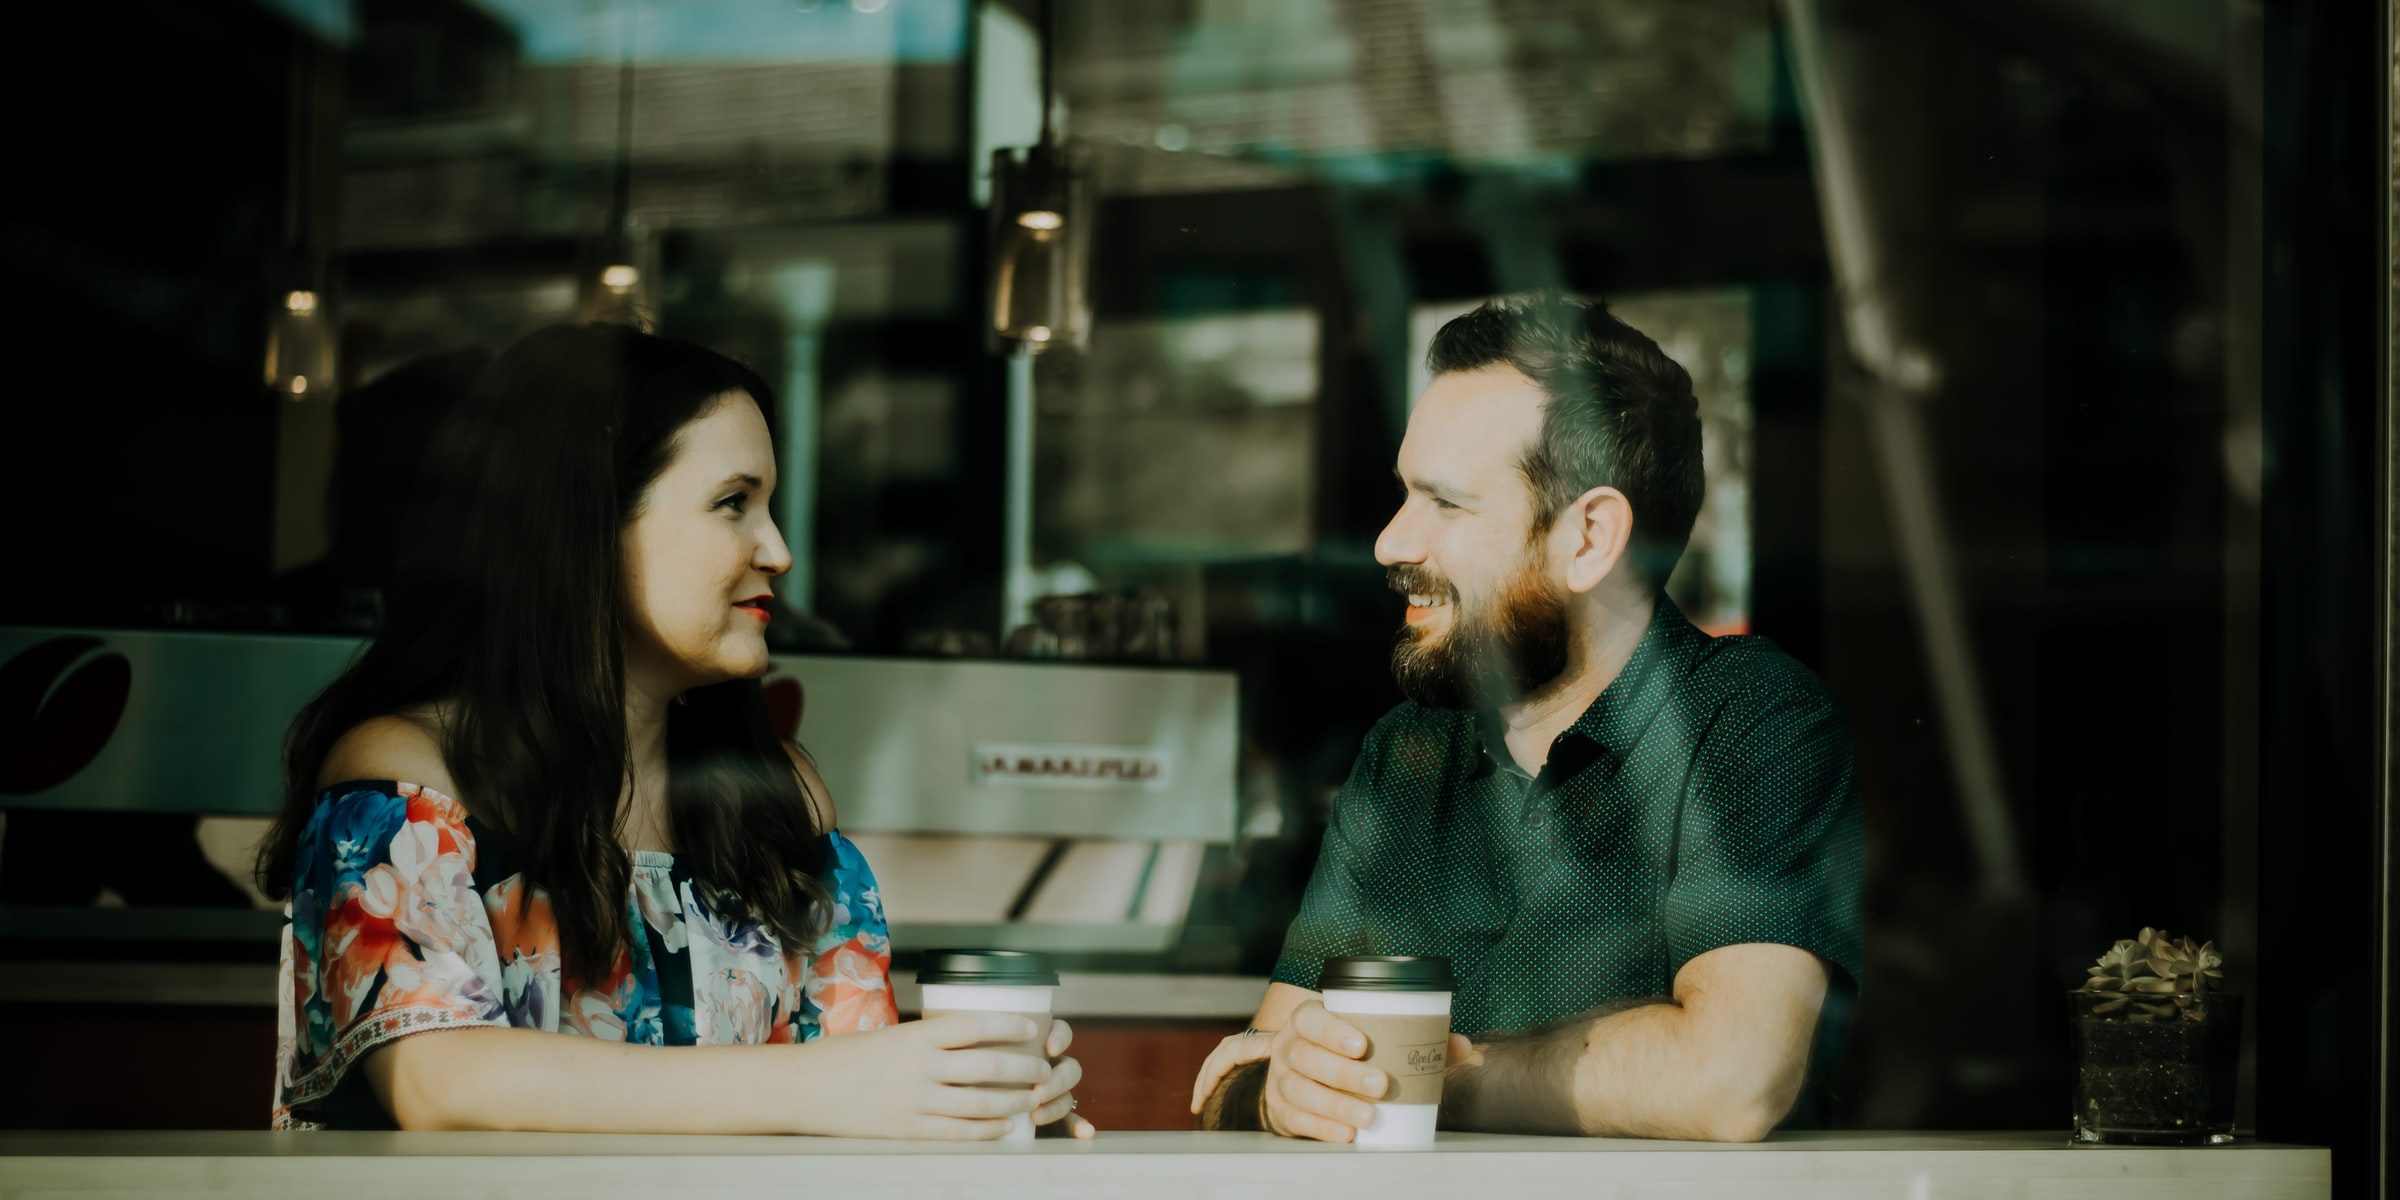 Mies ja nainen juttelevat kahvilassa